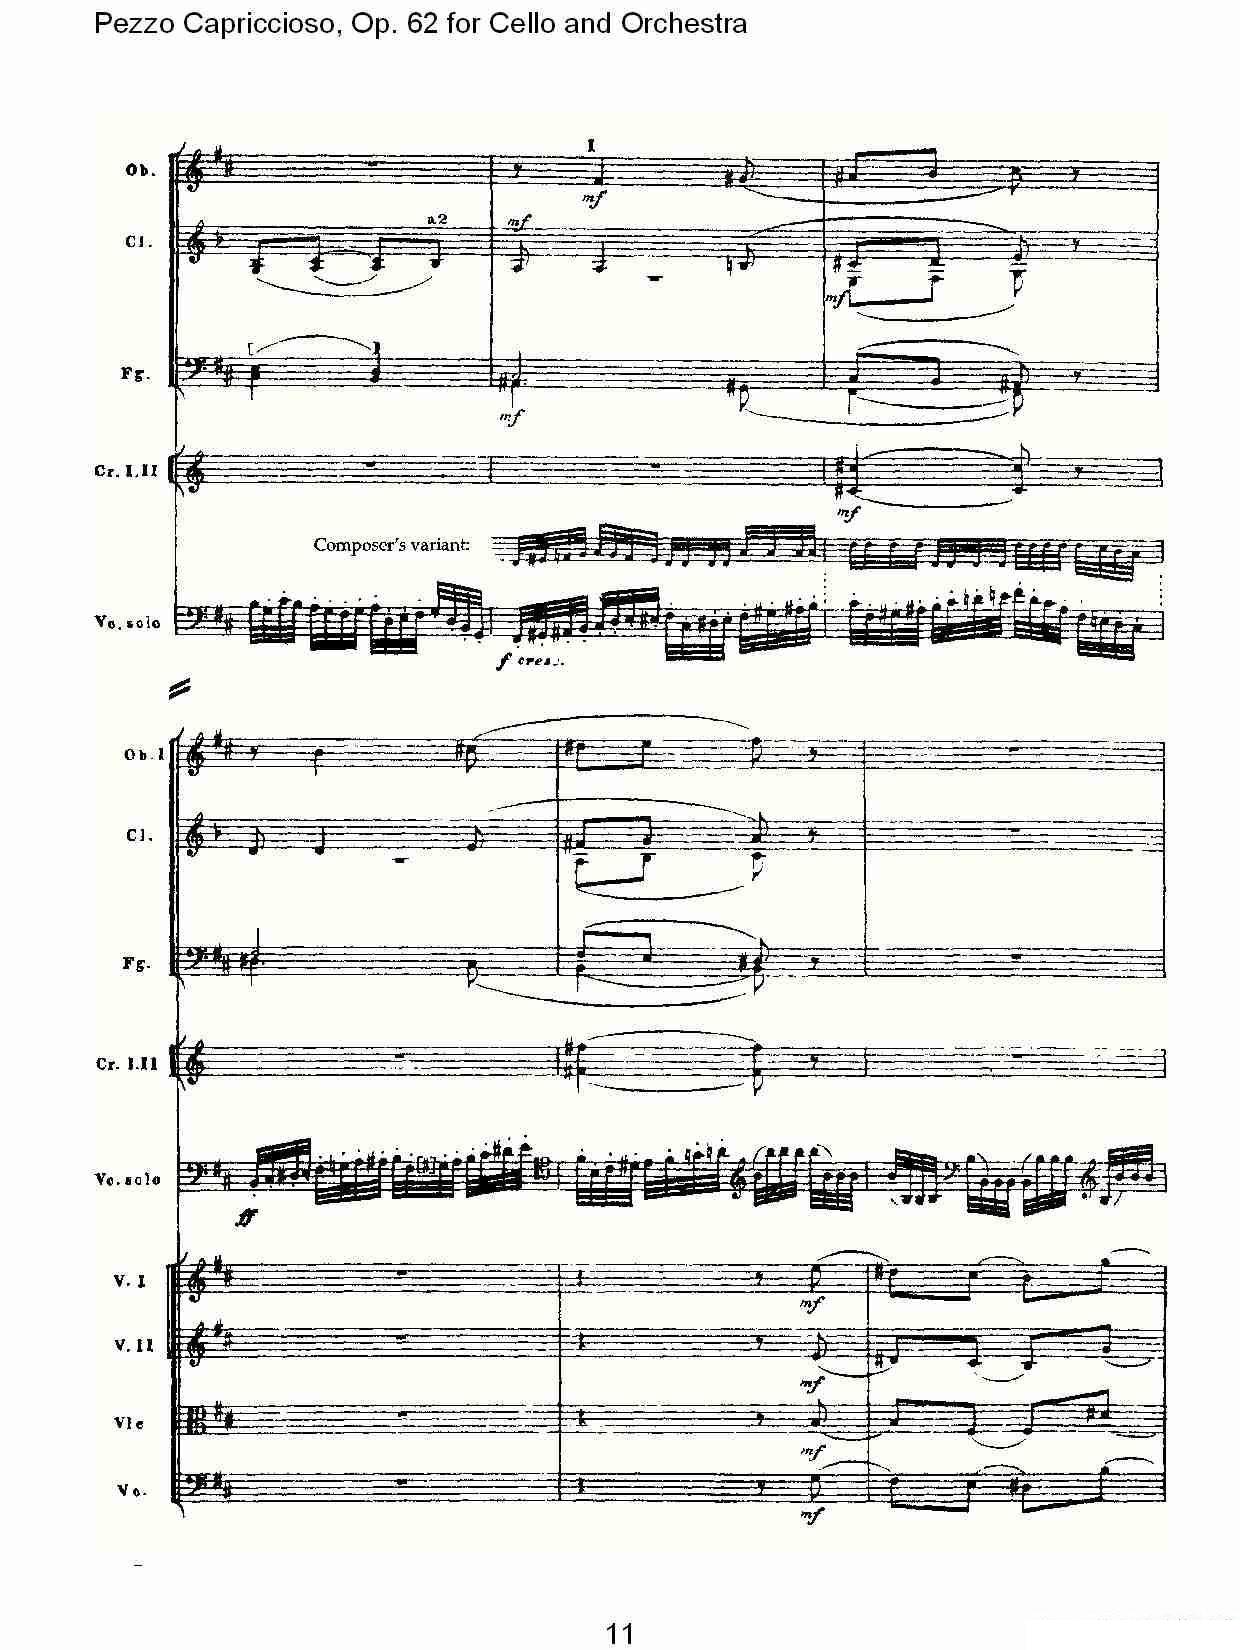 彼得·伊利奇·柴可夫斯基《Pezzo Capriccioso, Op.62》提琴谱（第11页）